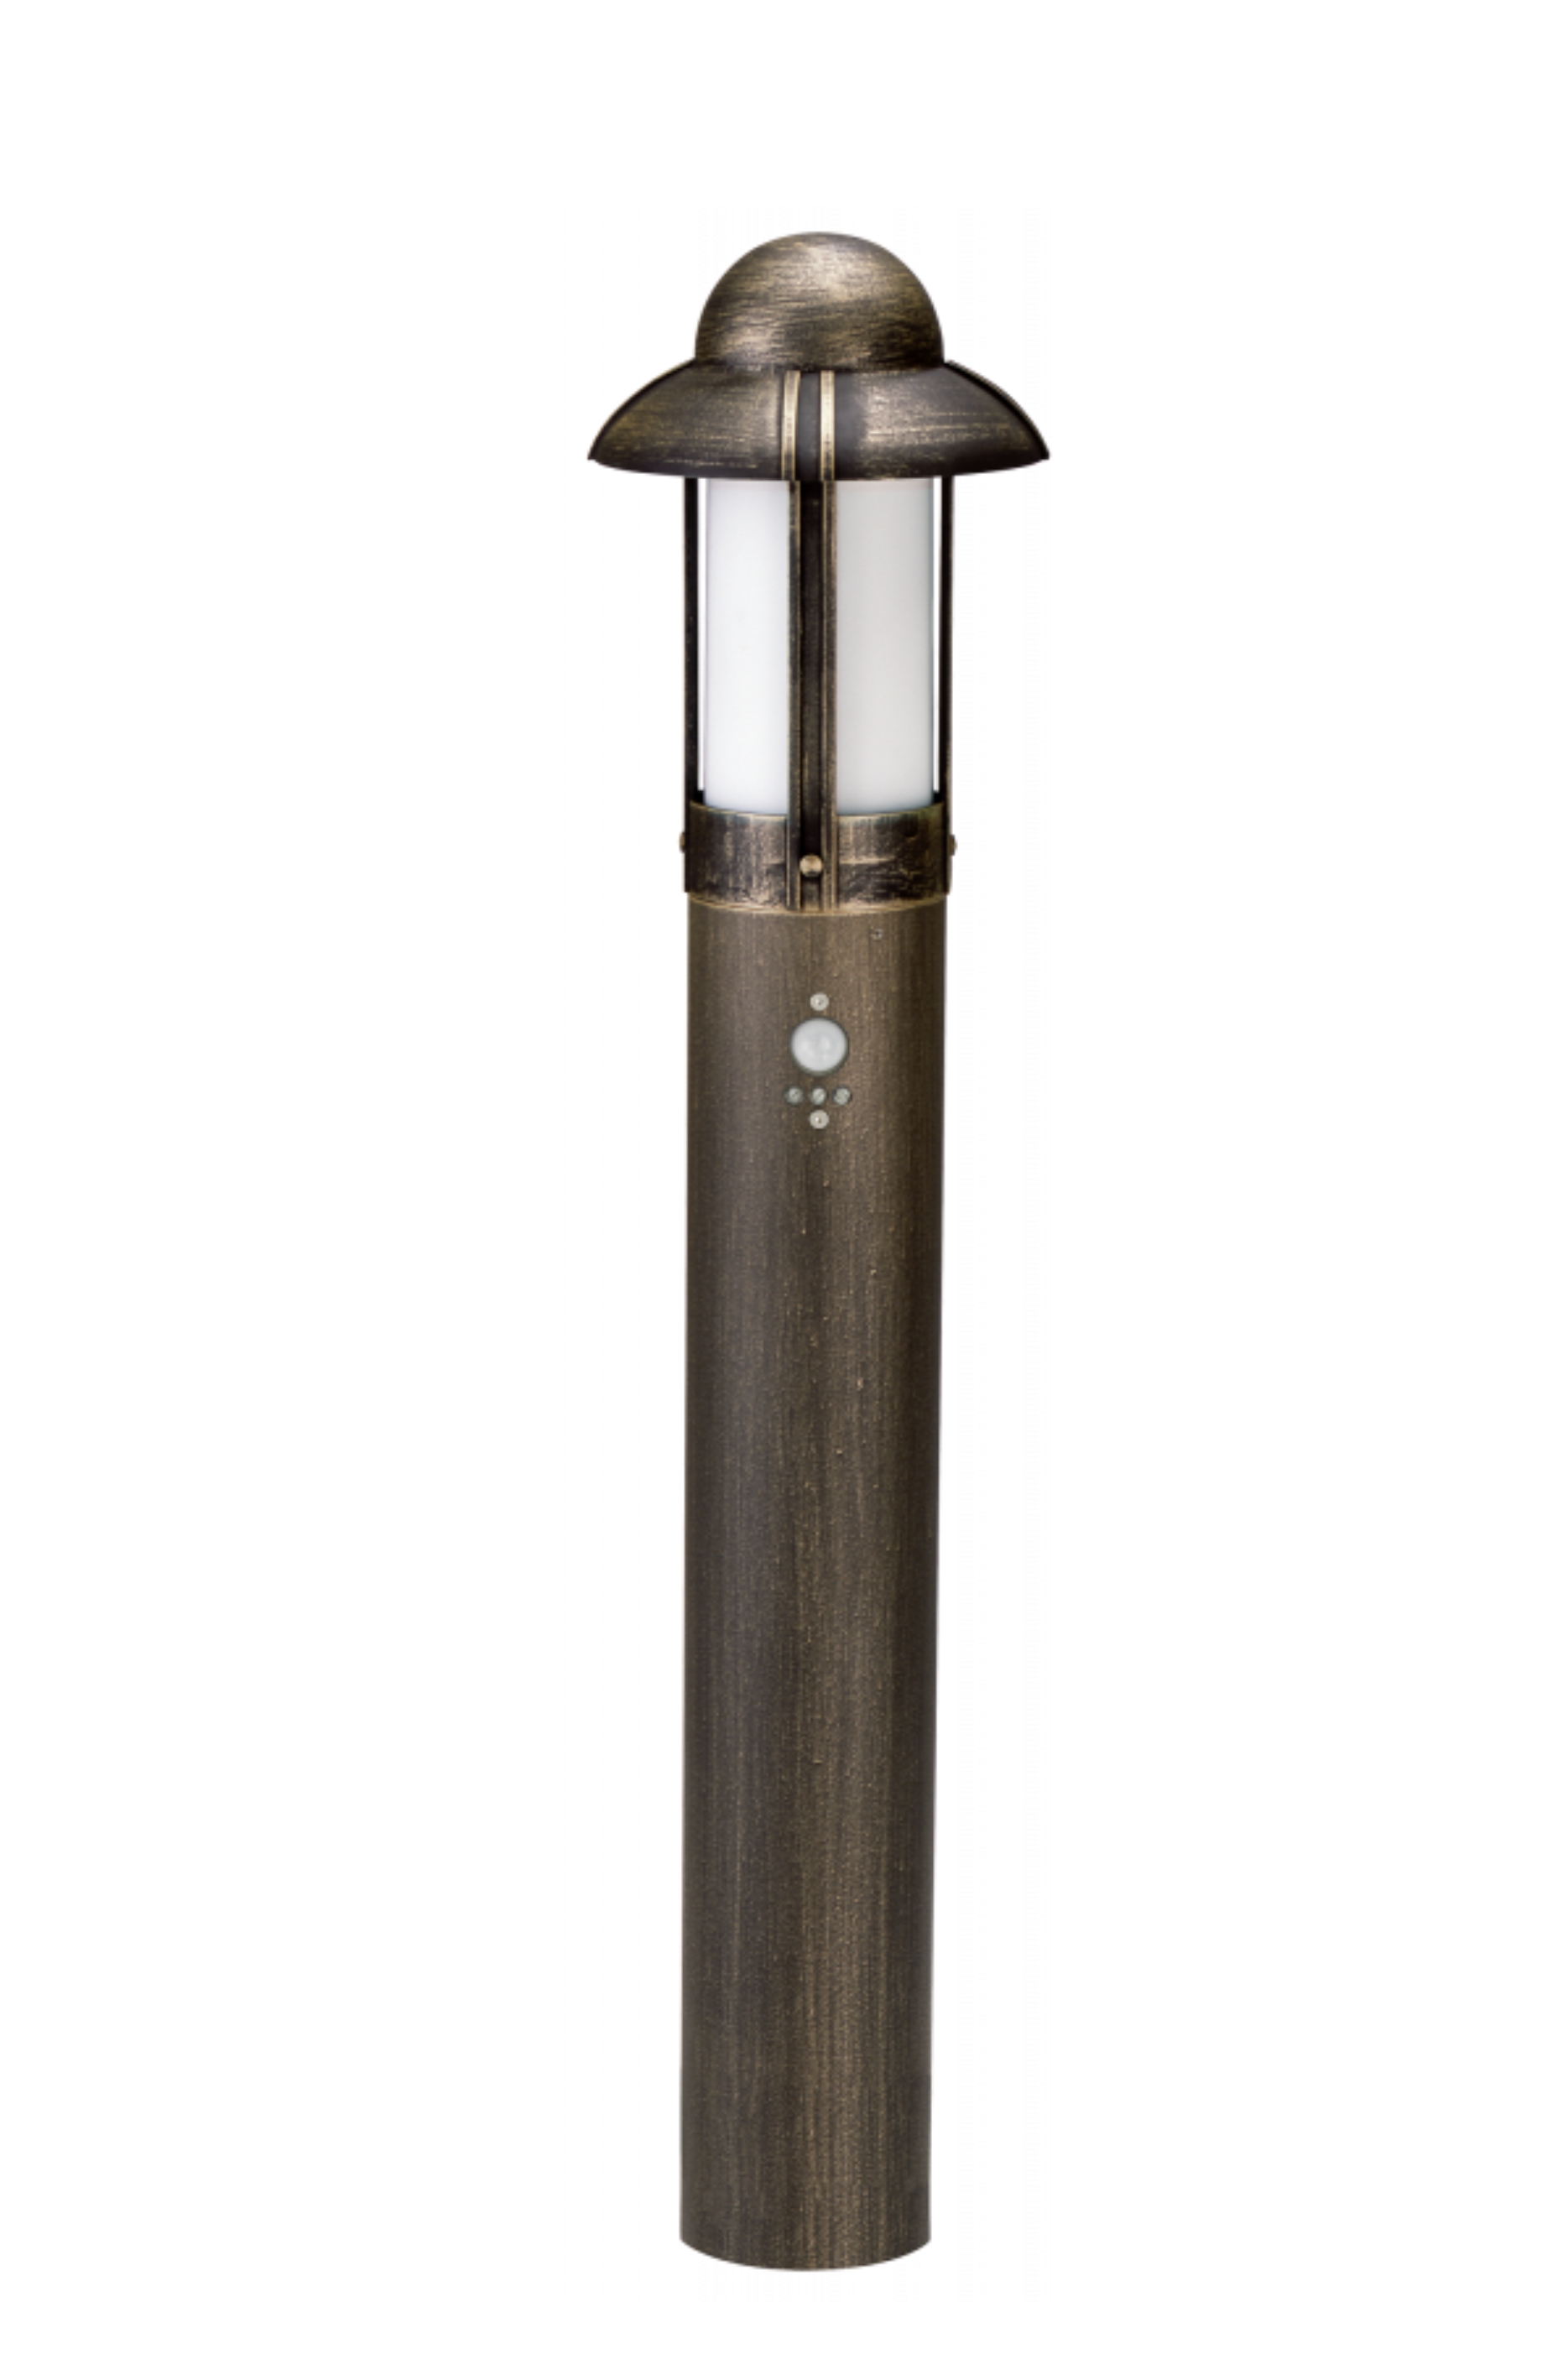 Albert LeuchtenPollerleuchte Typ Nr. 2075 - Farbe: braun-messing, mit BWM 90 grad,für 1 x Lampe, E27